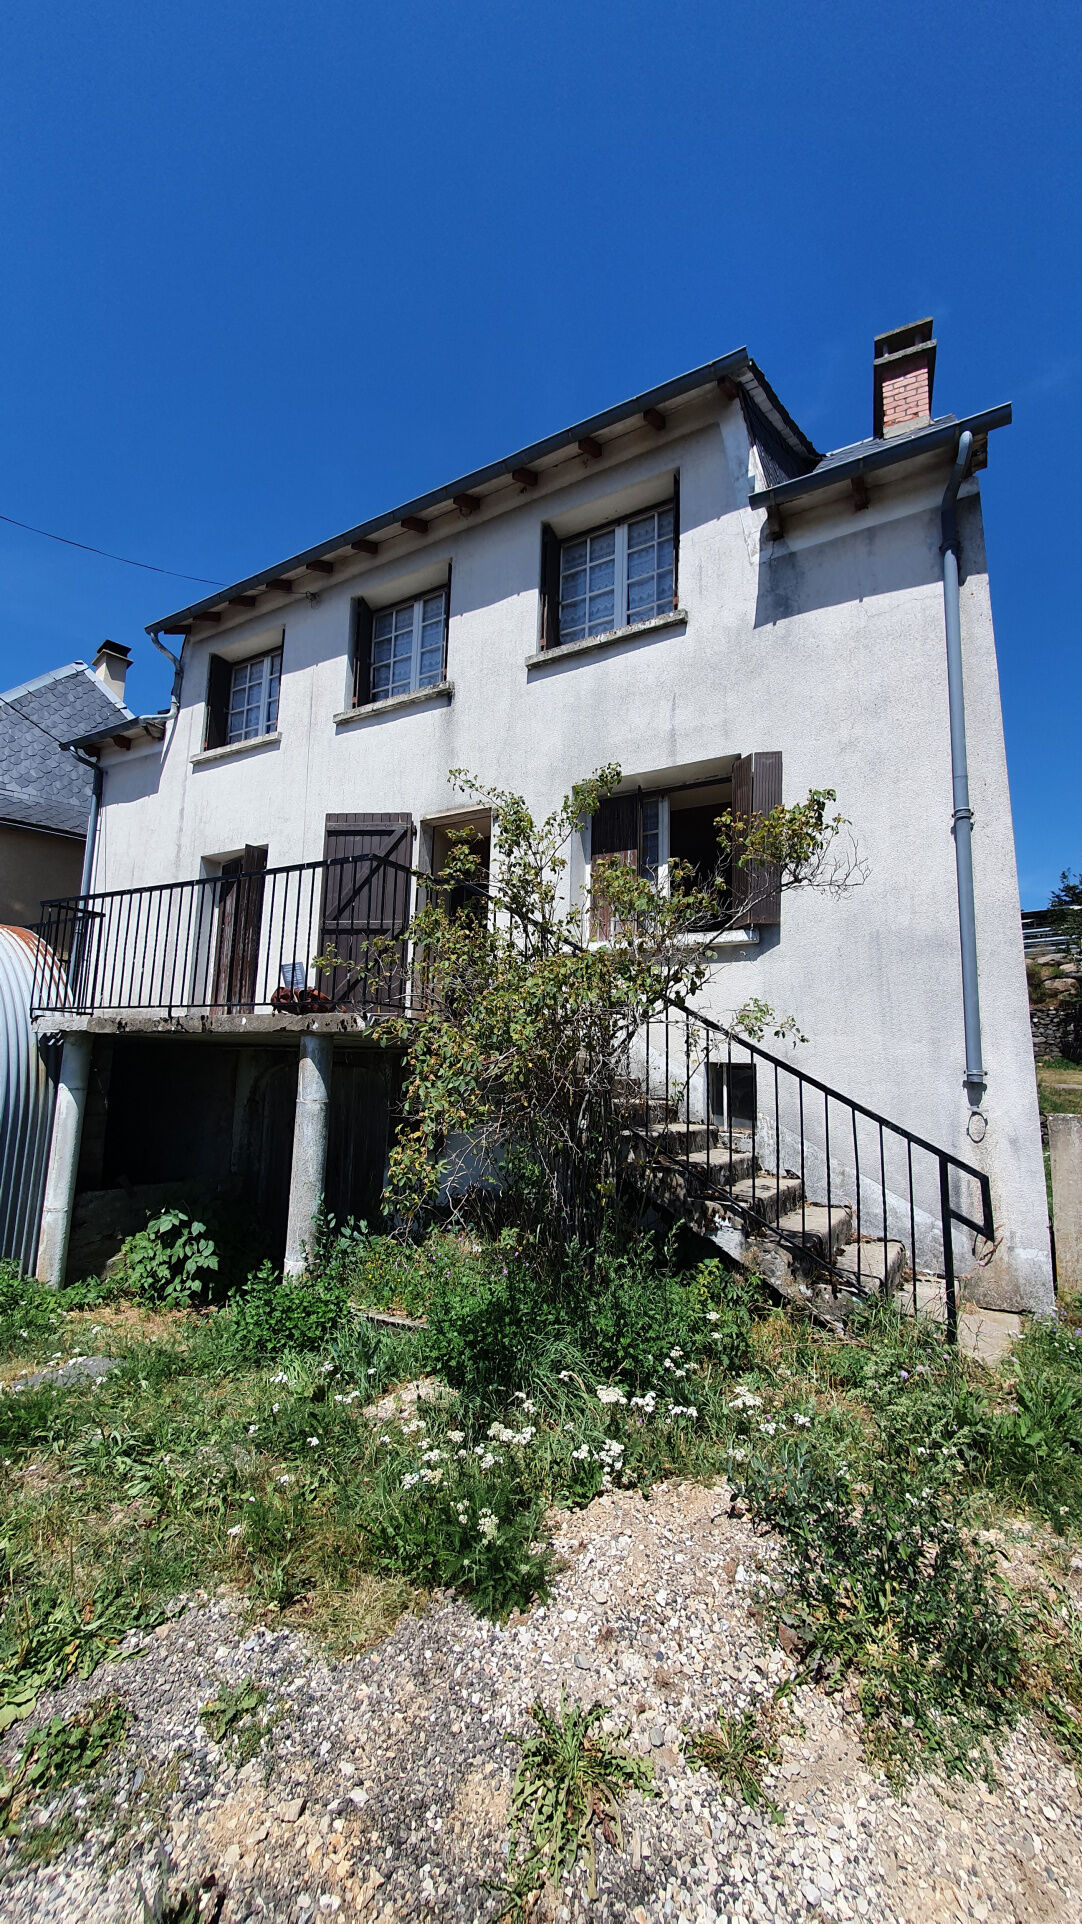 Vente Maison de village 100 m² à Saint Geniez d'Olt Et d'Aubrac 55 000 €